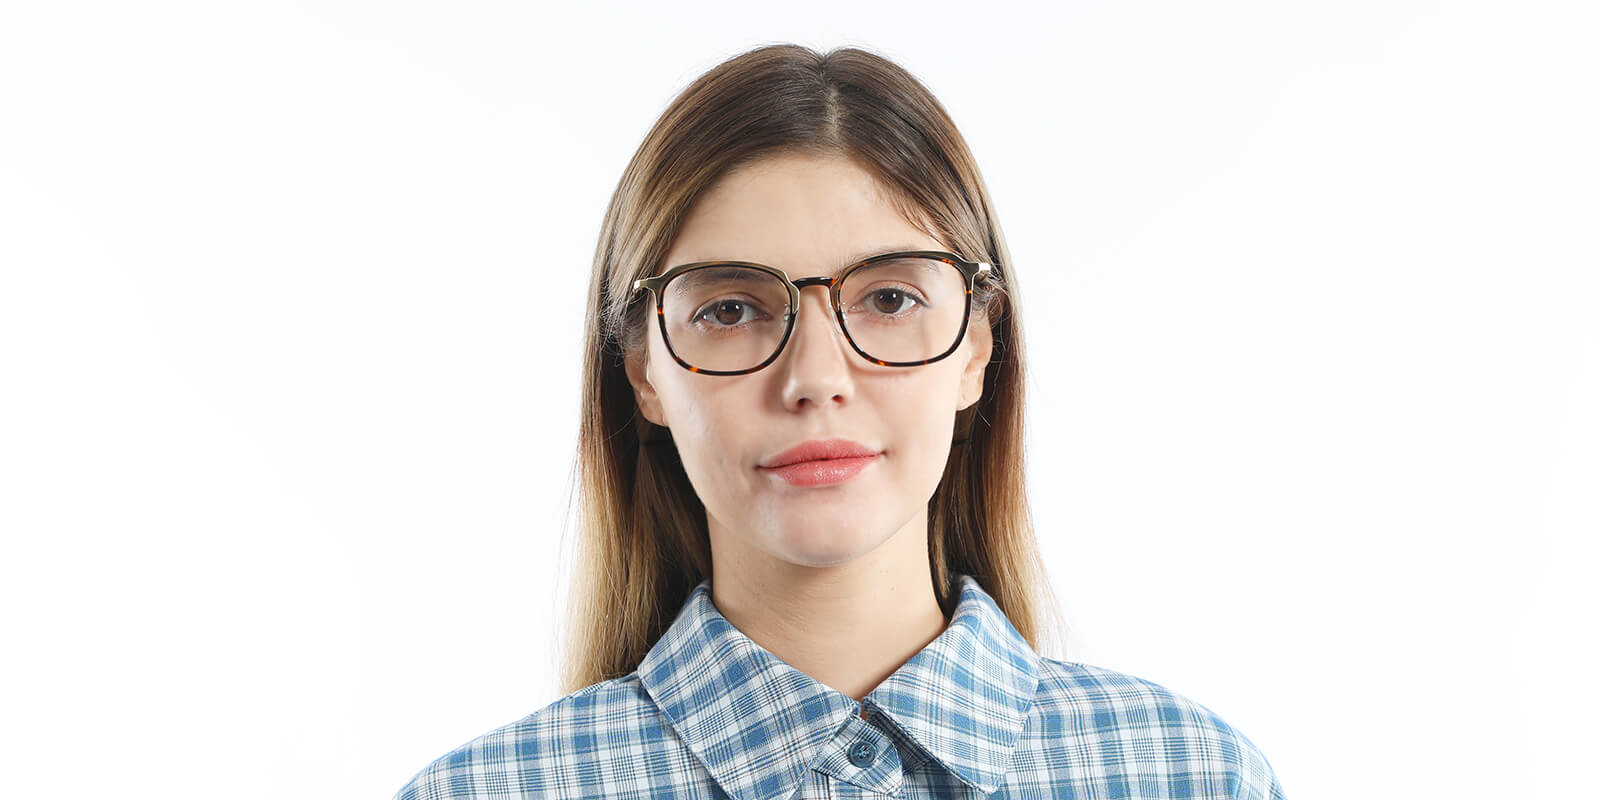 Tortoiseshell Aurora - Square Glasses